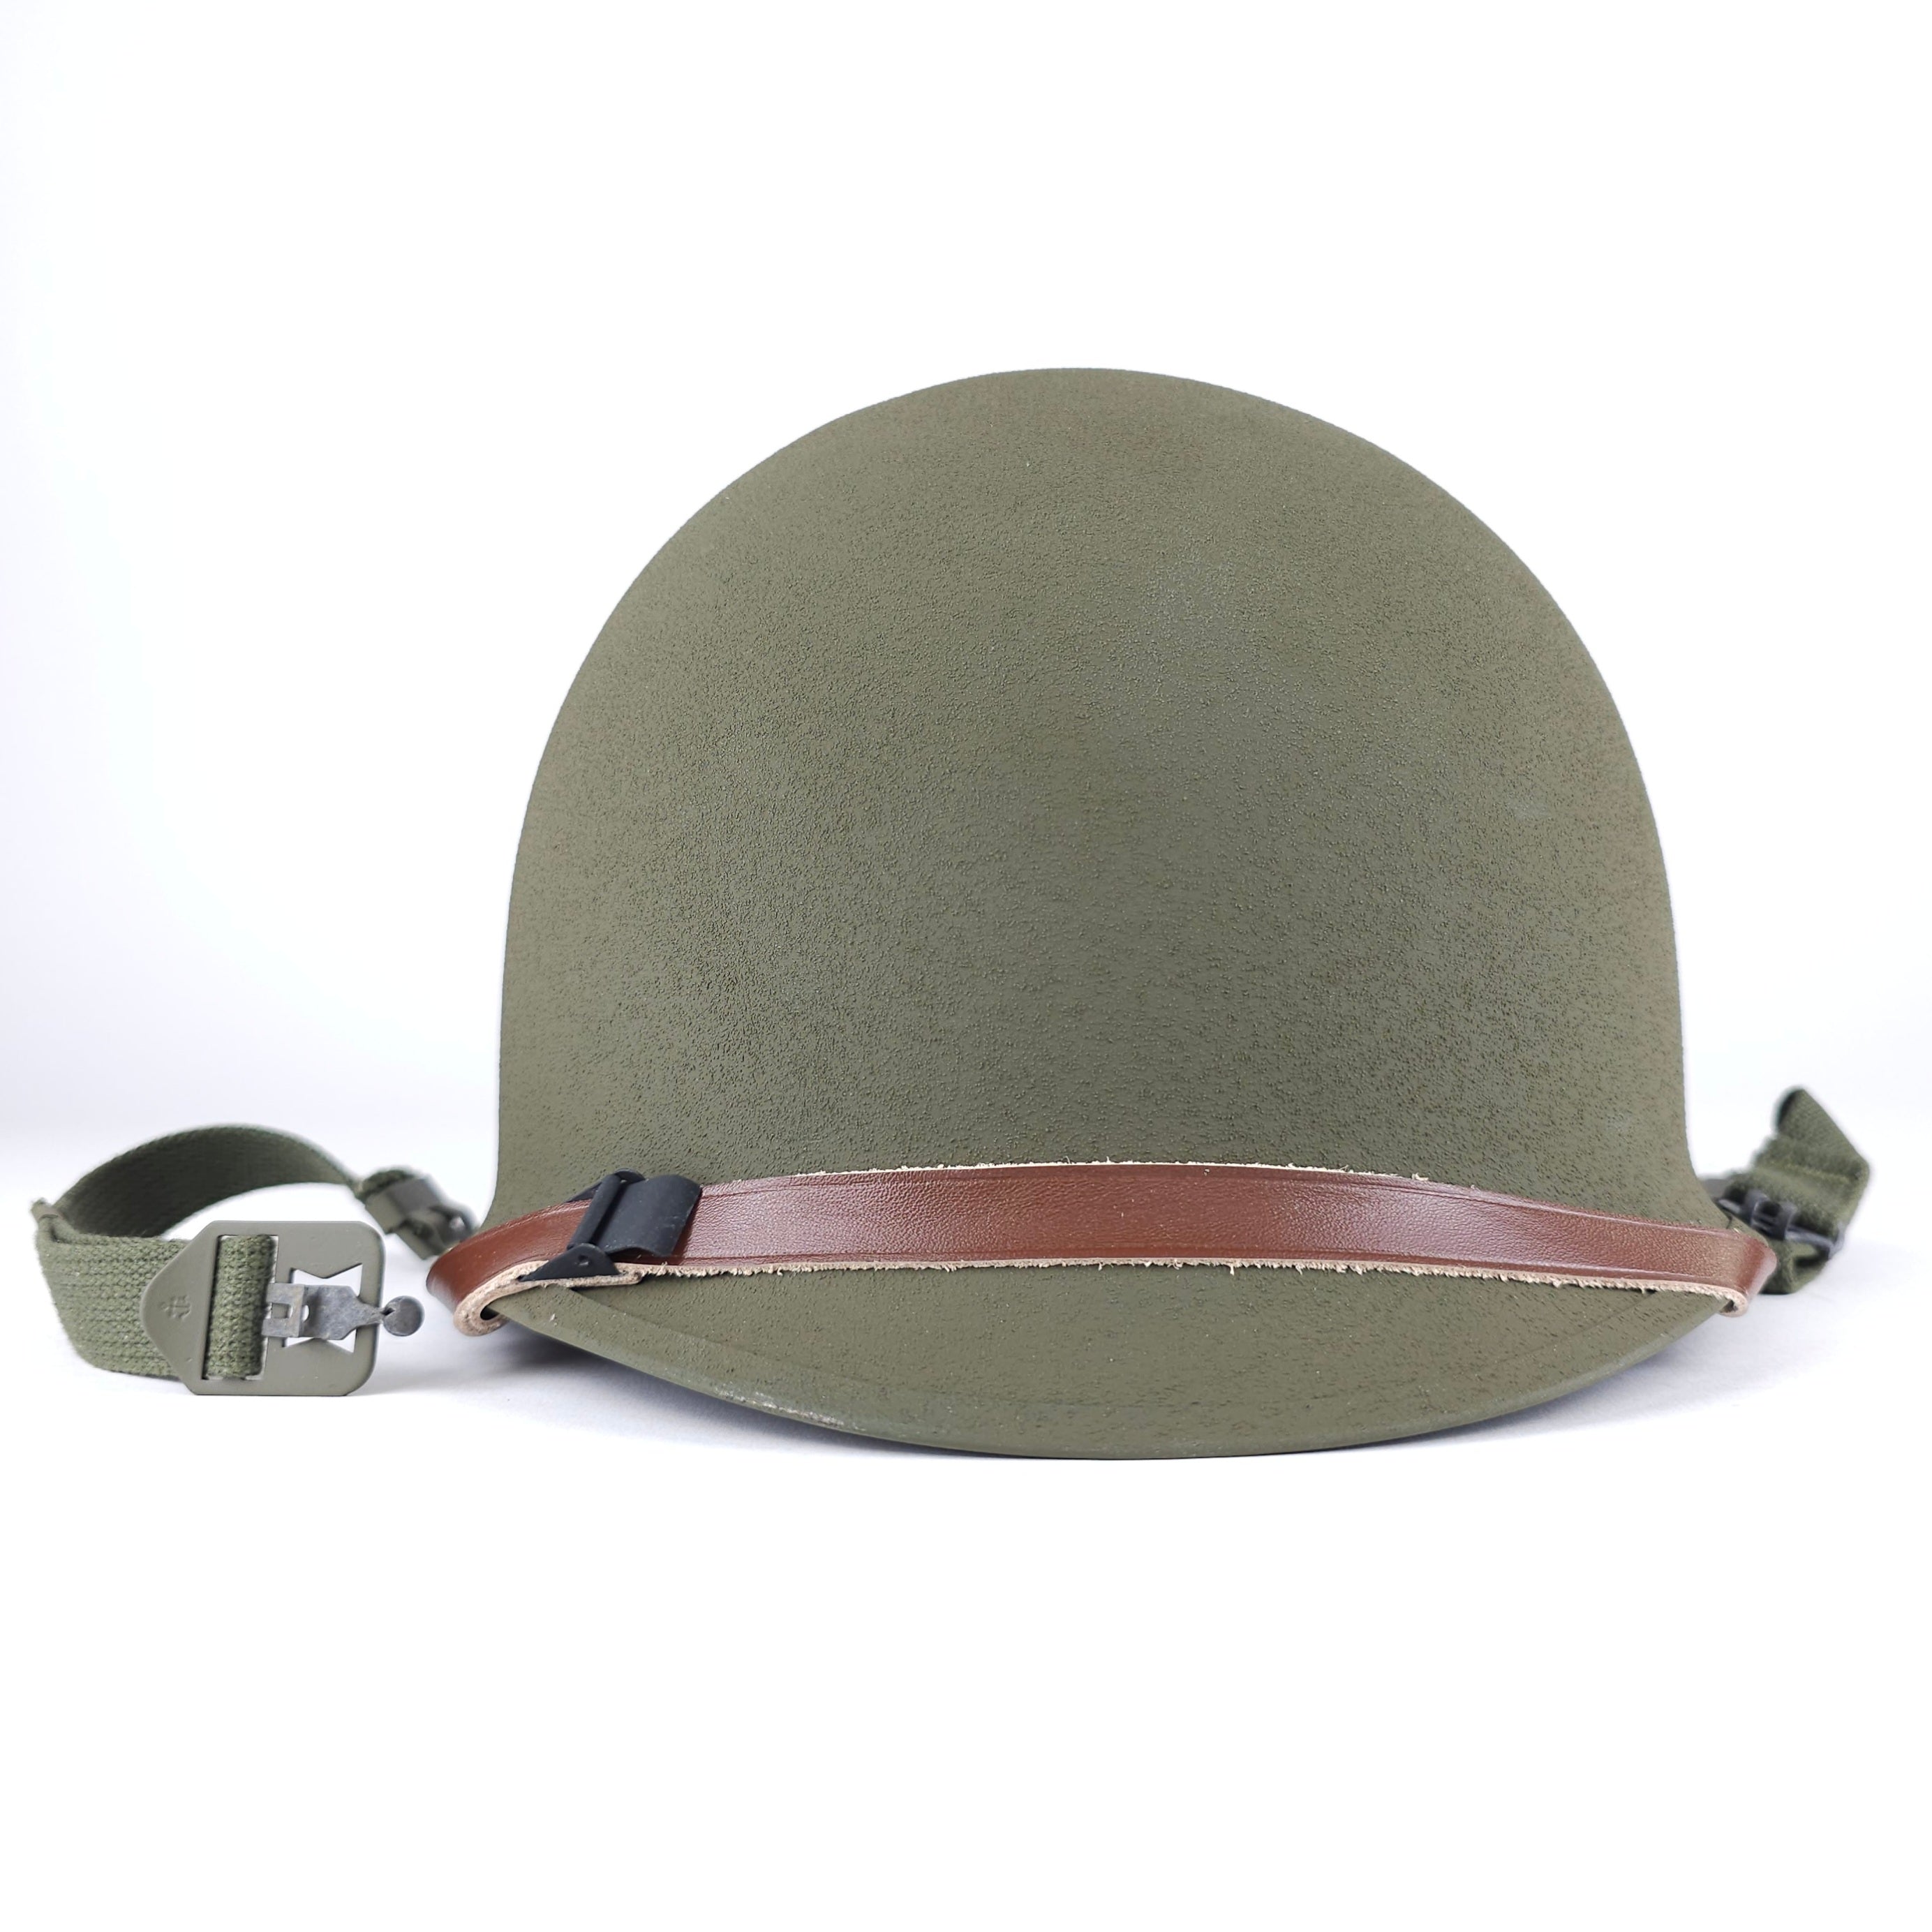 M1 Helm – Koreakrieg – Infanterie